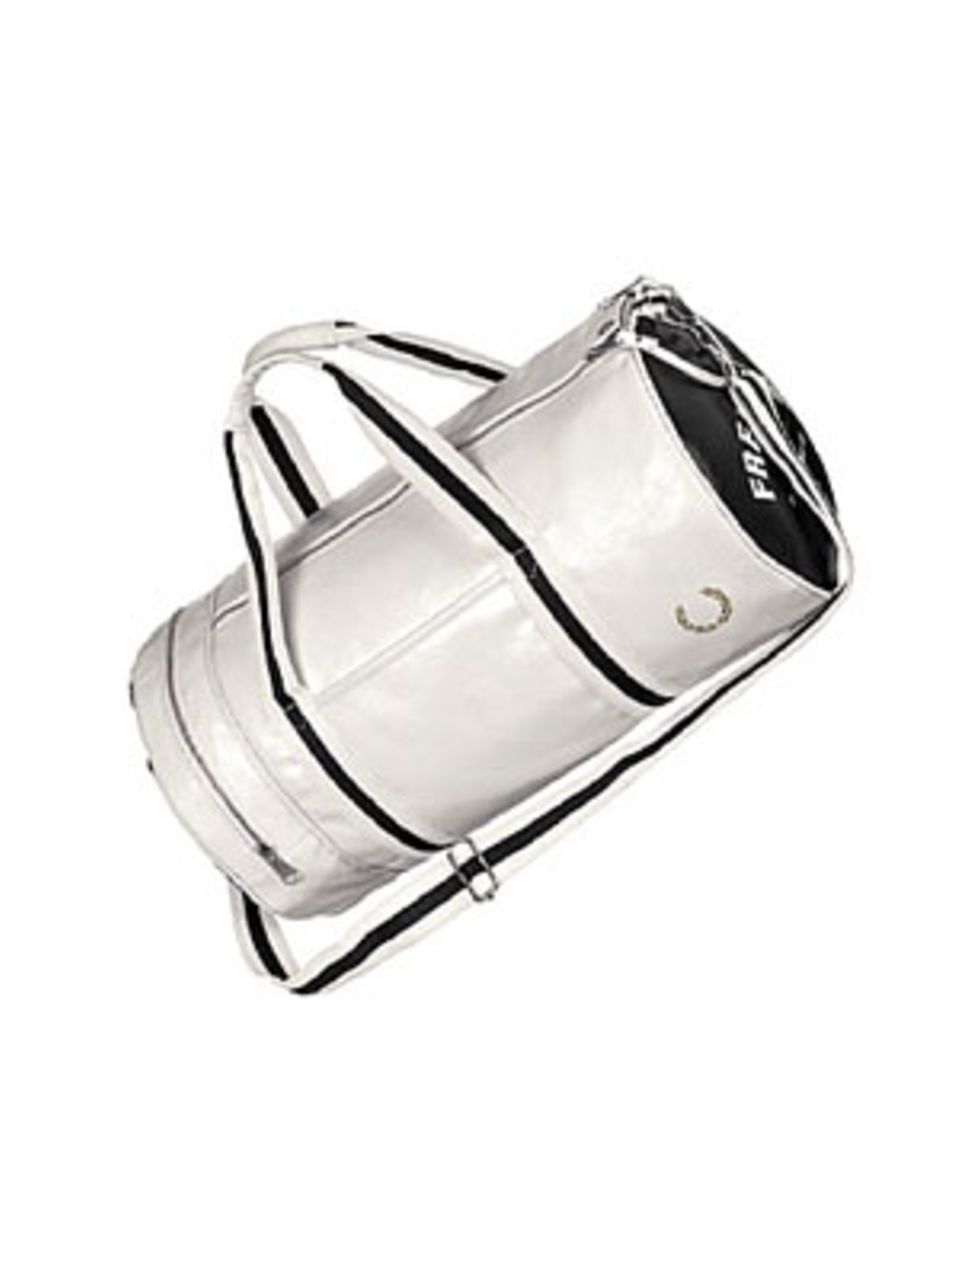 Stylische Reisetasche in Schwarz-Weiß mit langem Schulterriemen von Fred Perry, um 60 Euro. Über www.frontlineshop.com.